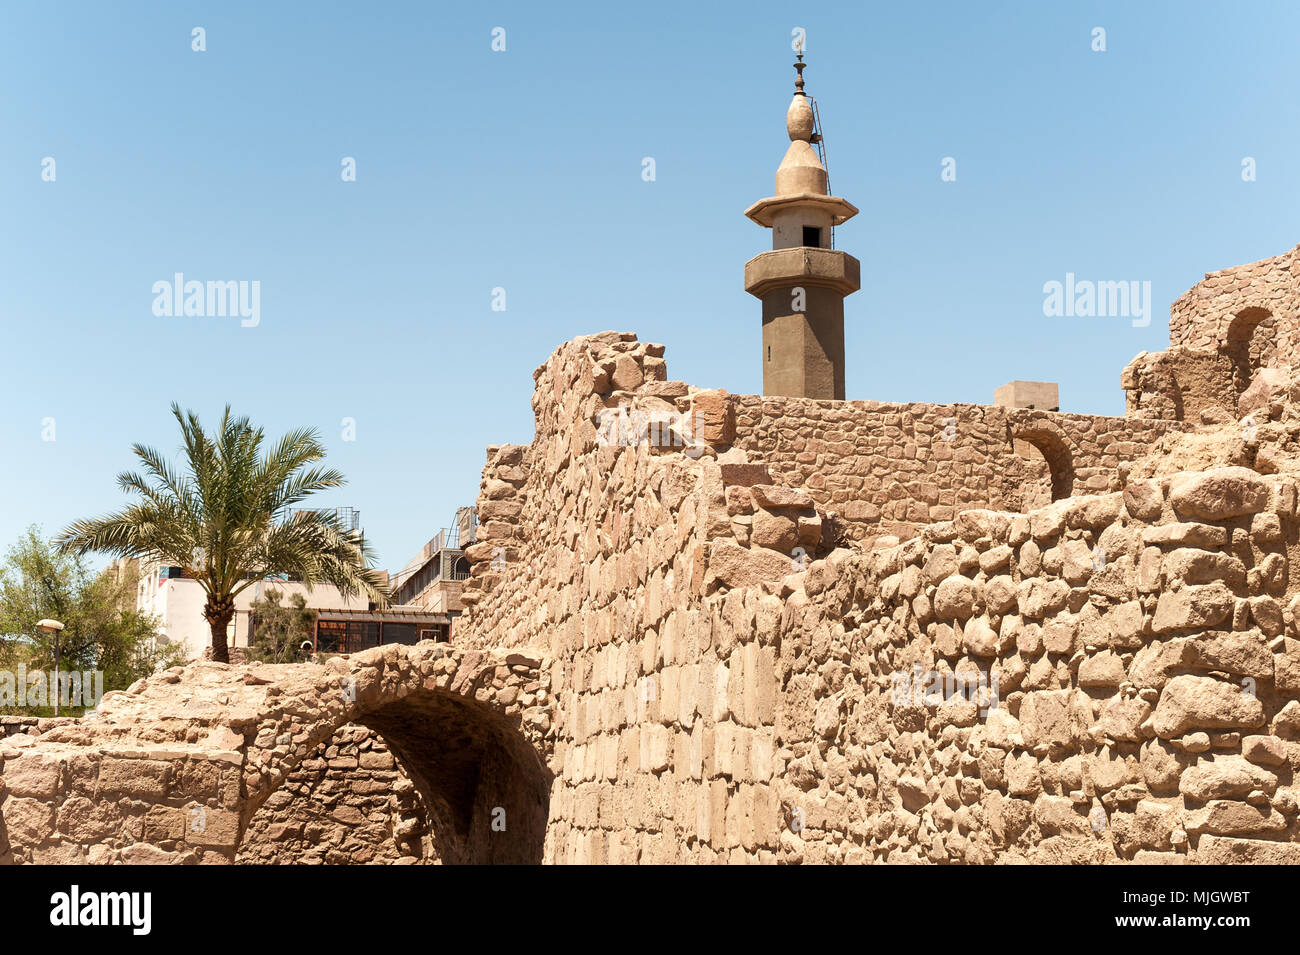 Aqaba,al-ʻAqabah , 'l'ostacolo è una giordana città costiera situata alla punta nord-orientale del Mar Rosso. Aqaba è la più grande città del Golfo di Foto Stock